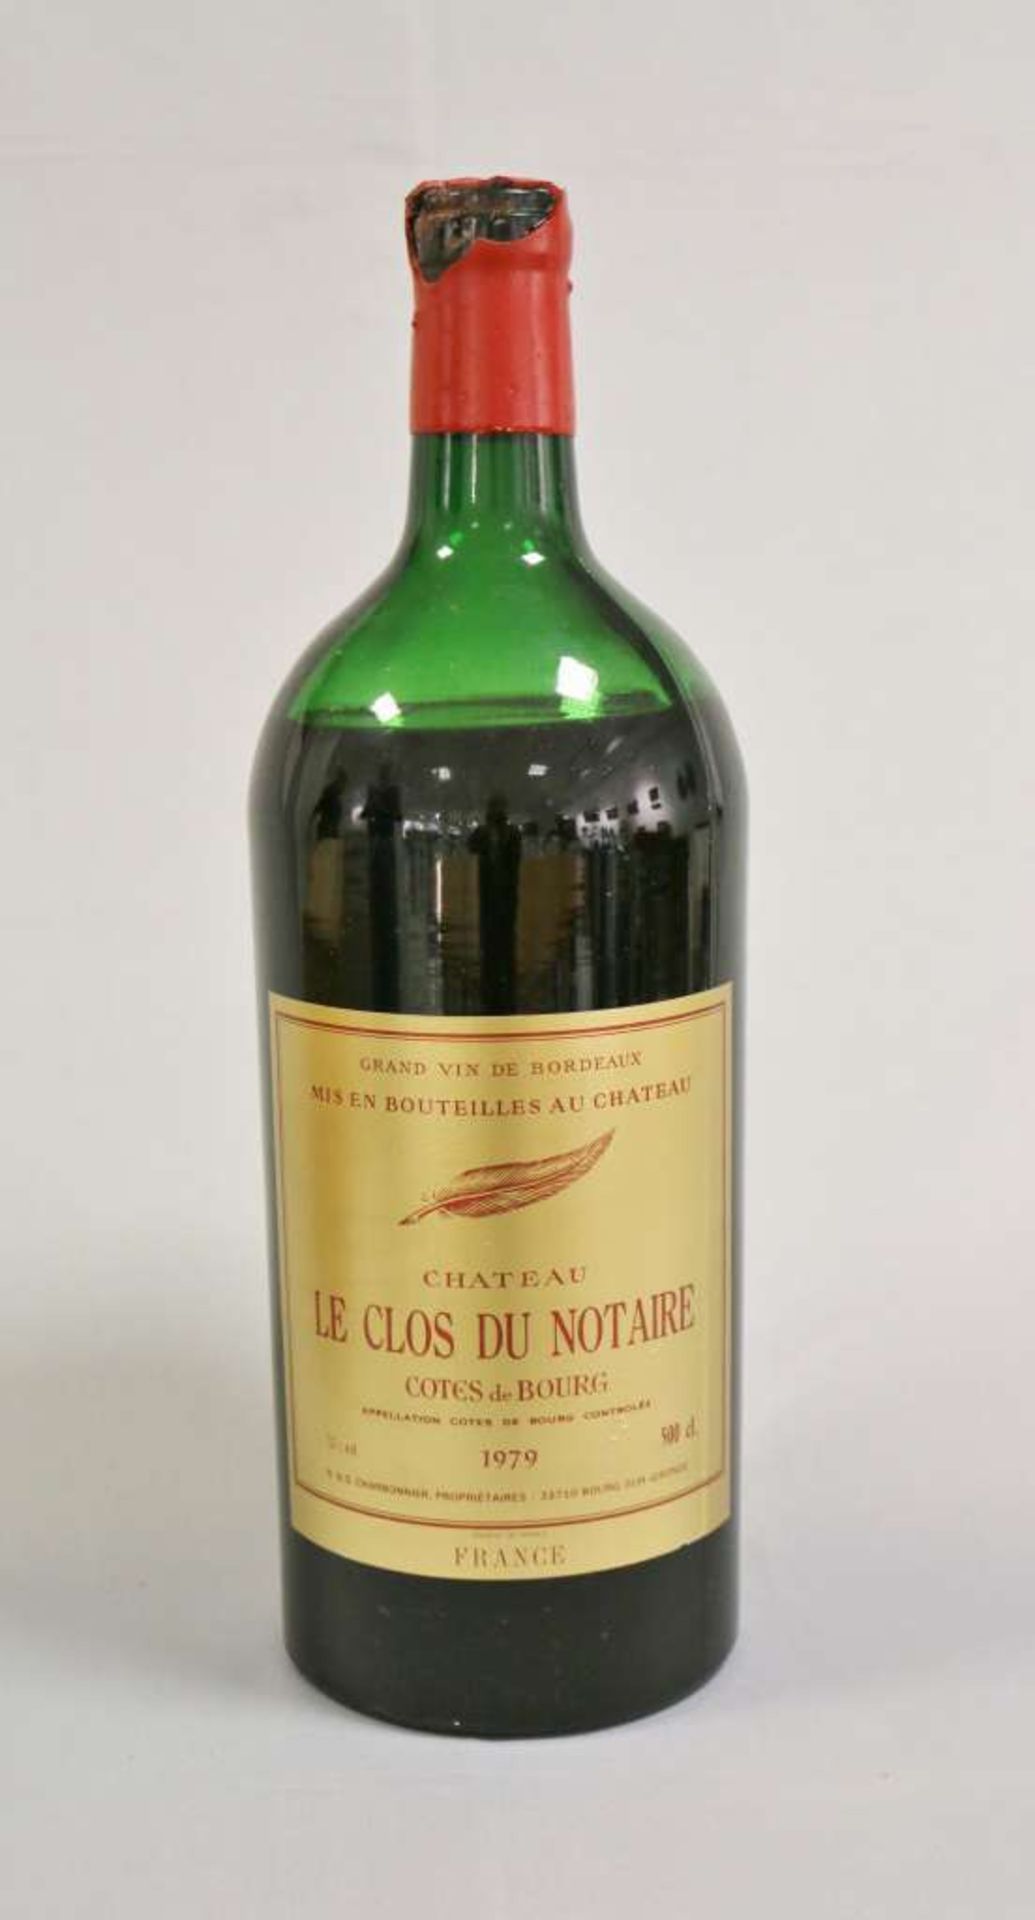 Rotwein, Flasche Château Clos du Notaire Côtes de Bourg 1979, 500 cl, Wachssiegel beschädigt. - Image 2 of 3